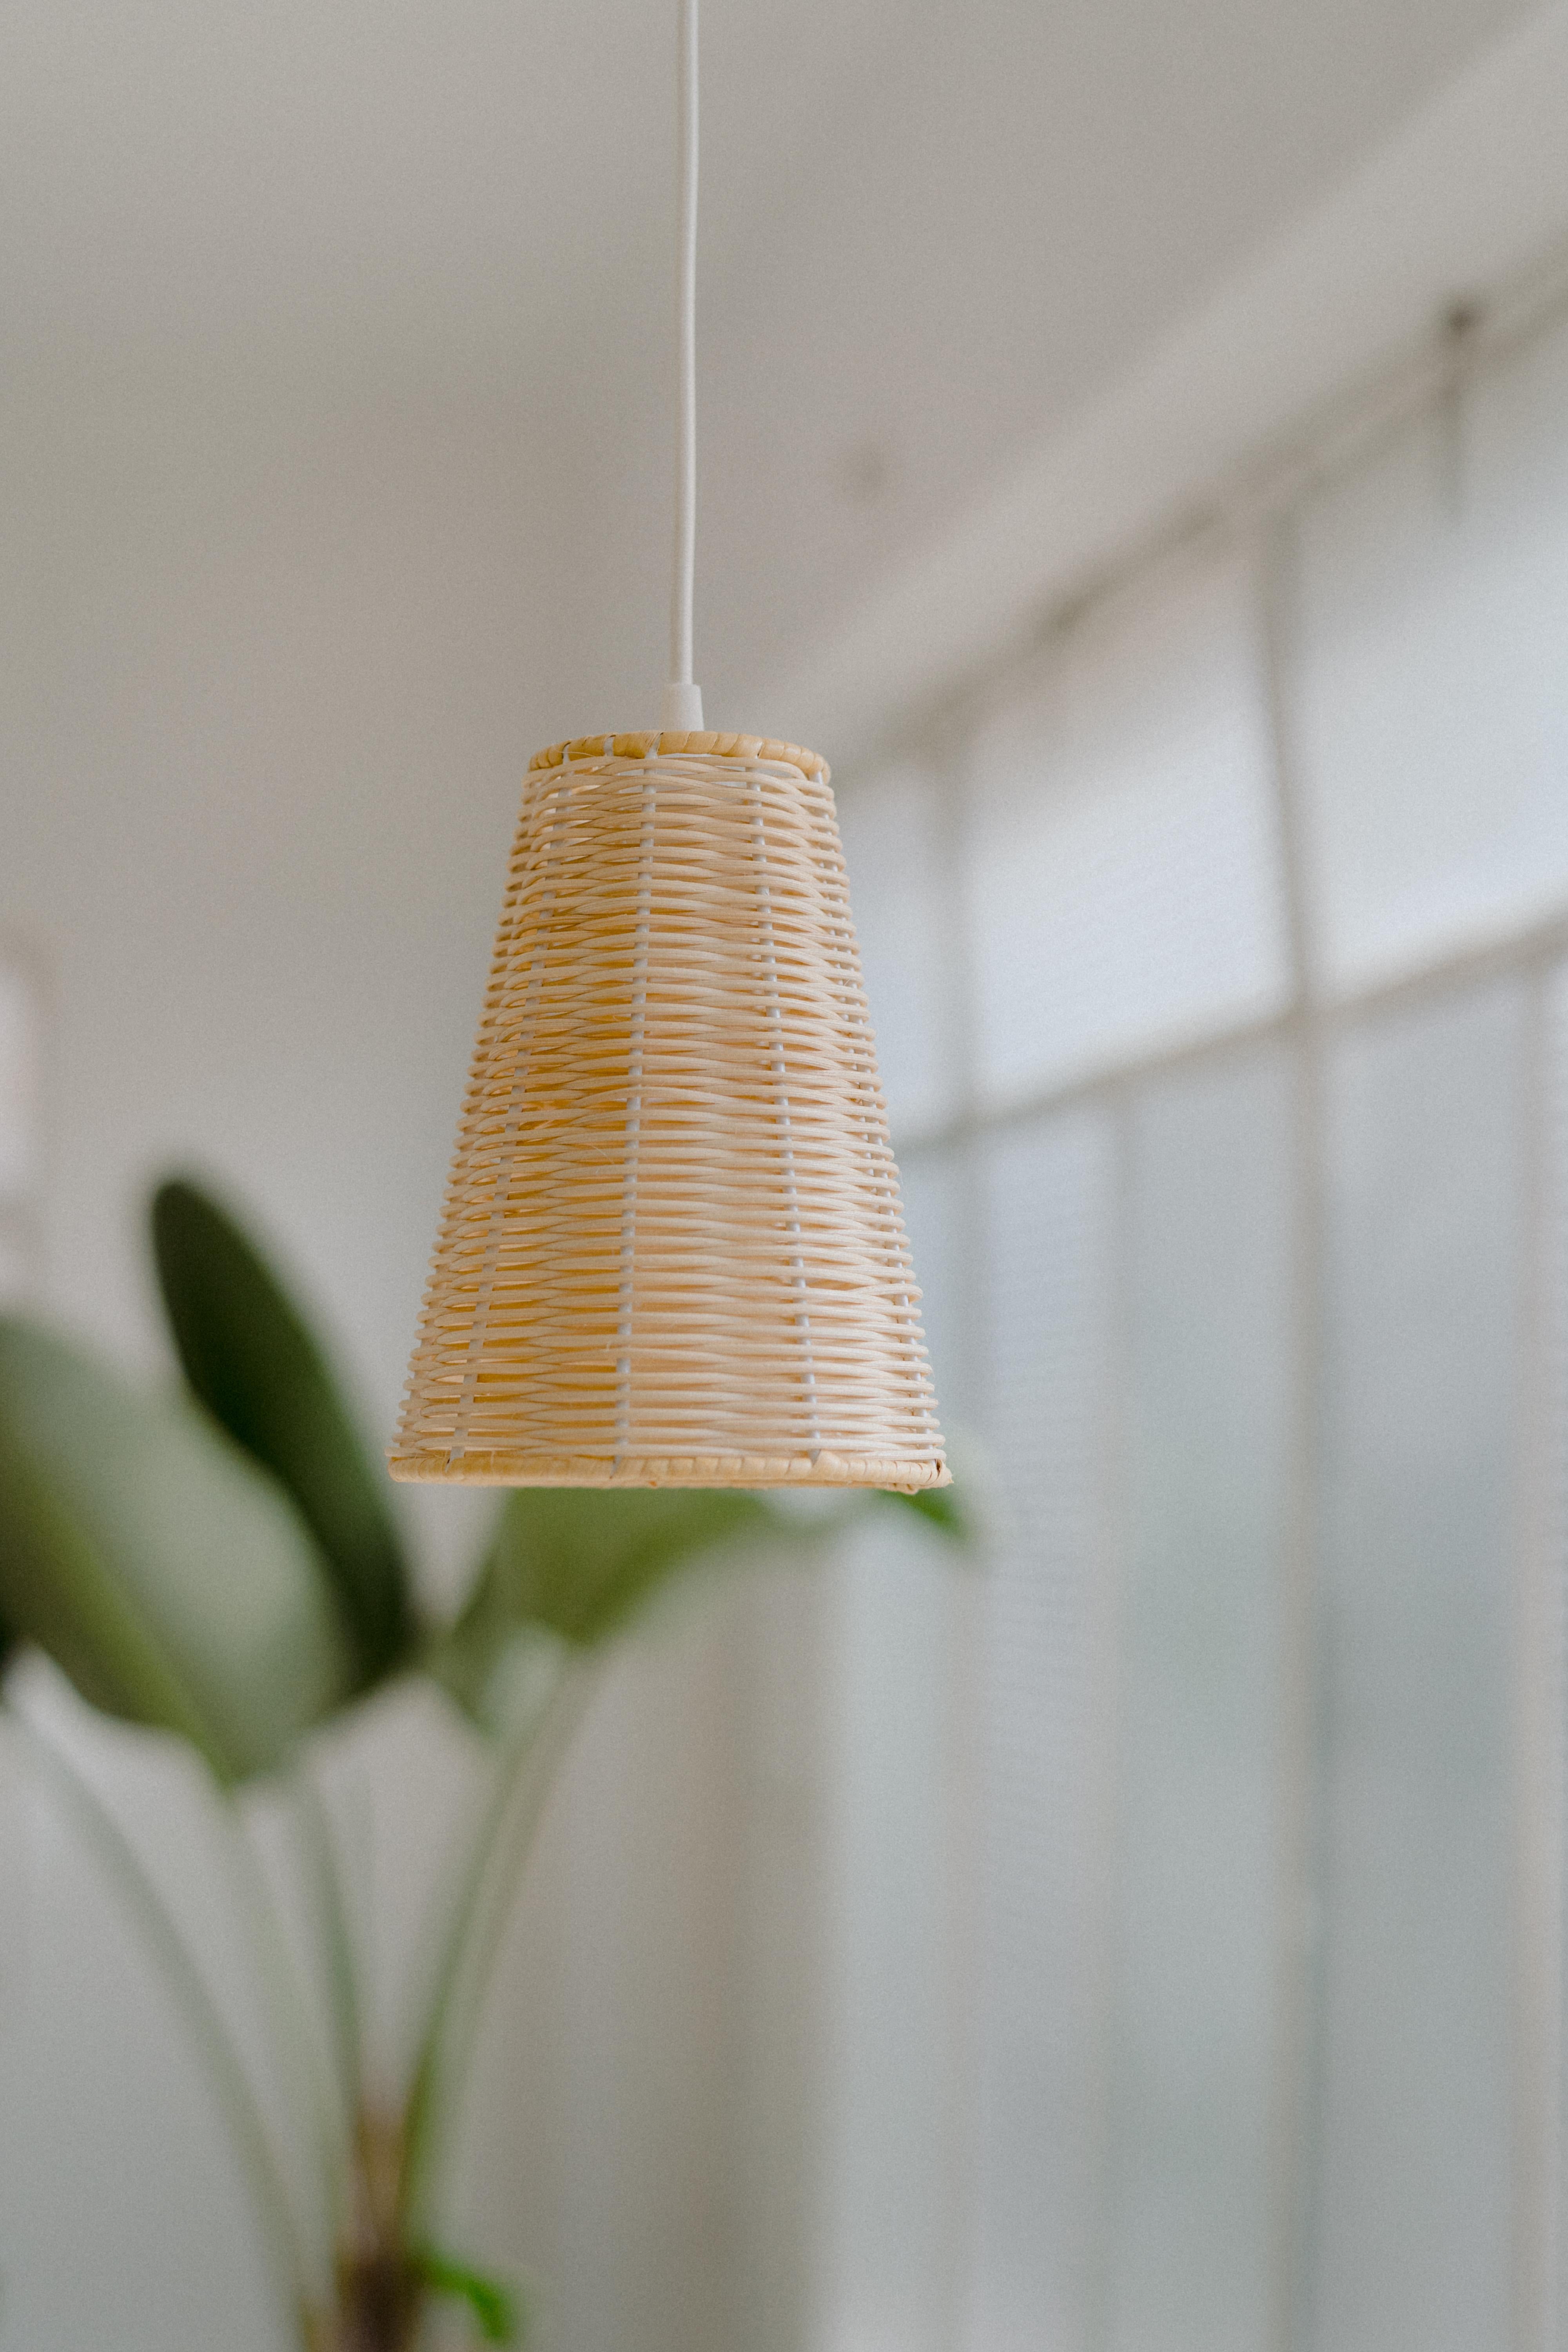 COSTA-Lampen werden von Mediterranean Objects in Barcelona, Spanien, entworfen und hergestellt. 
Es sind moderne kleine Lampen aus natürlichem Rattan, die in unserer Werkstatt von Hand geflochten werden. 
Es wird empfohlen, sie mit warmen